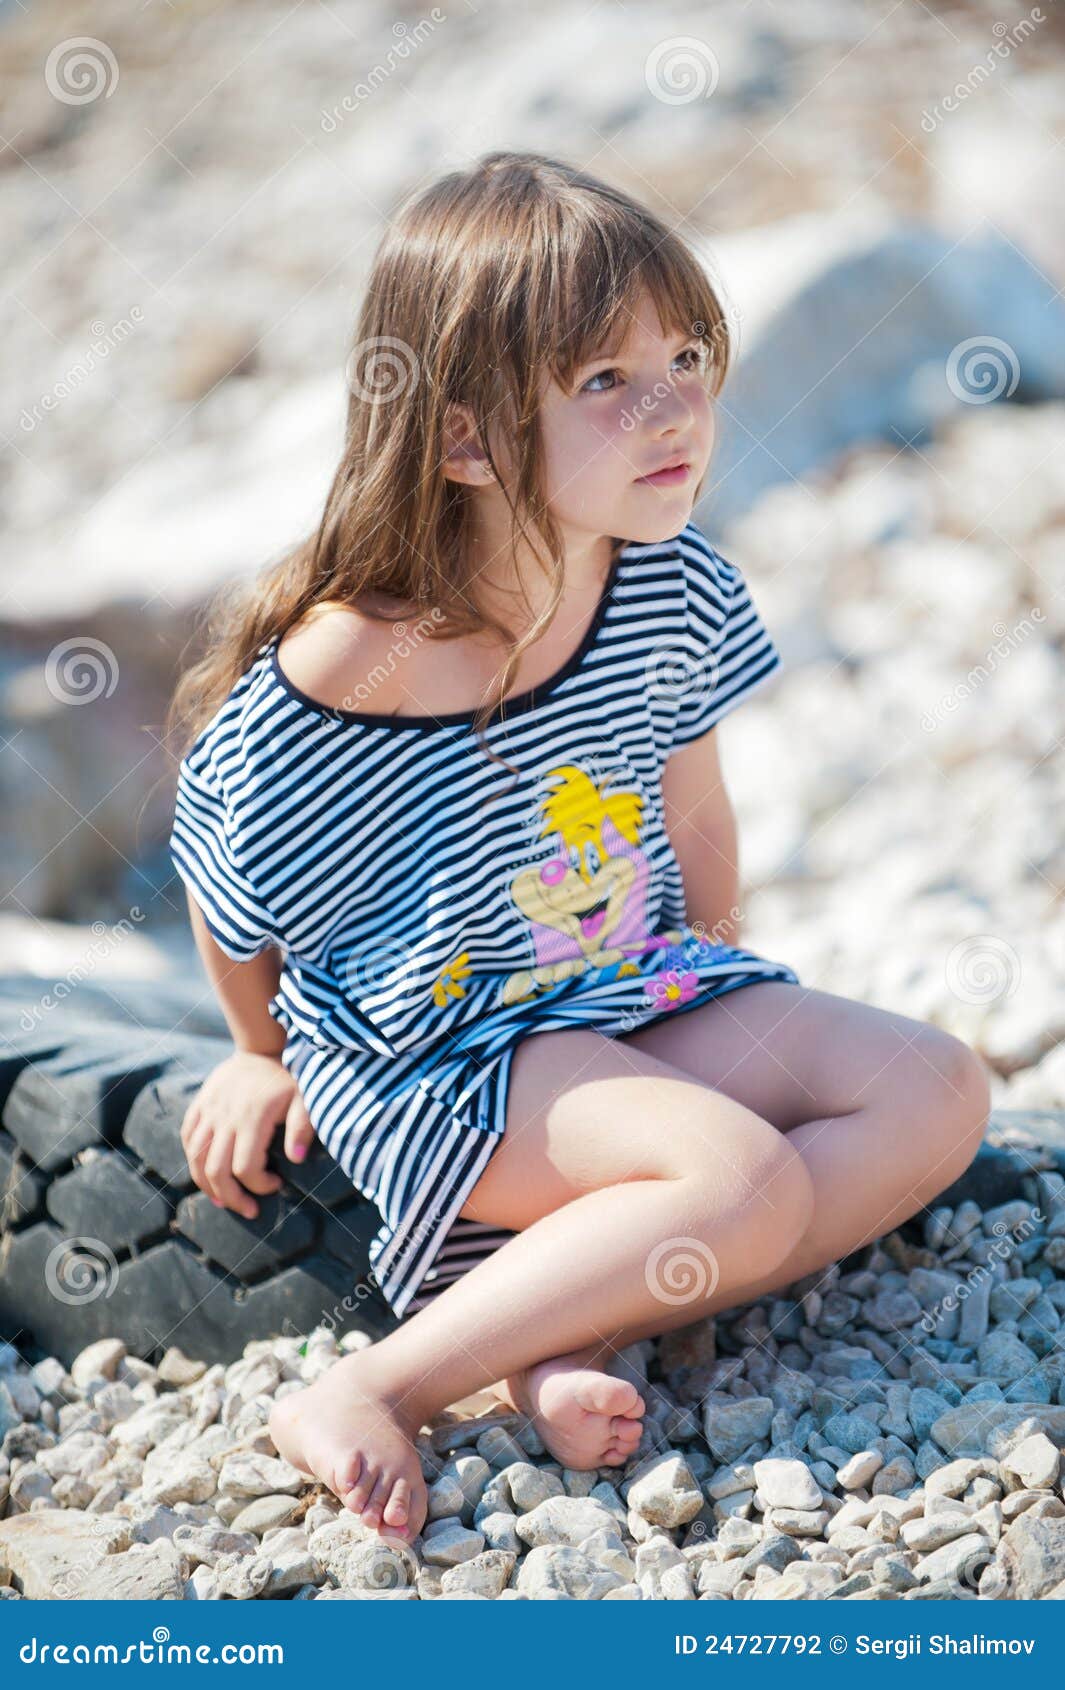 Sommerzeit. Bild ein kleines Mädchen, das am Strand spielt